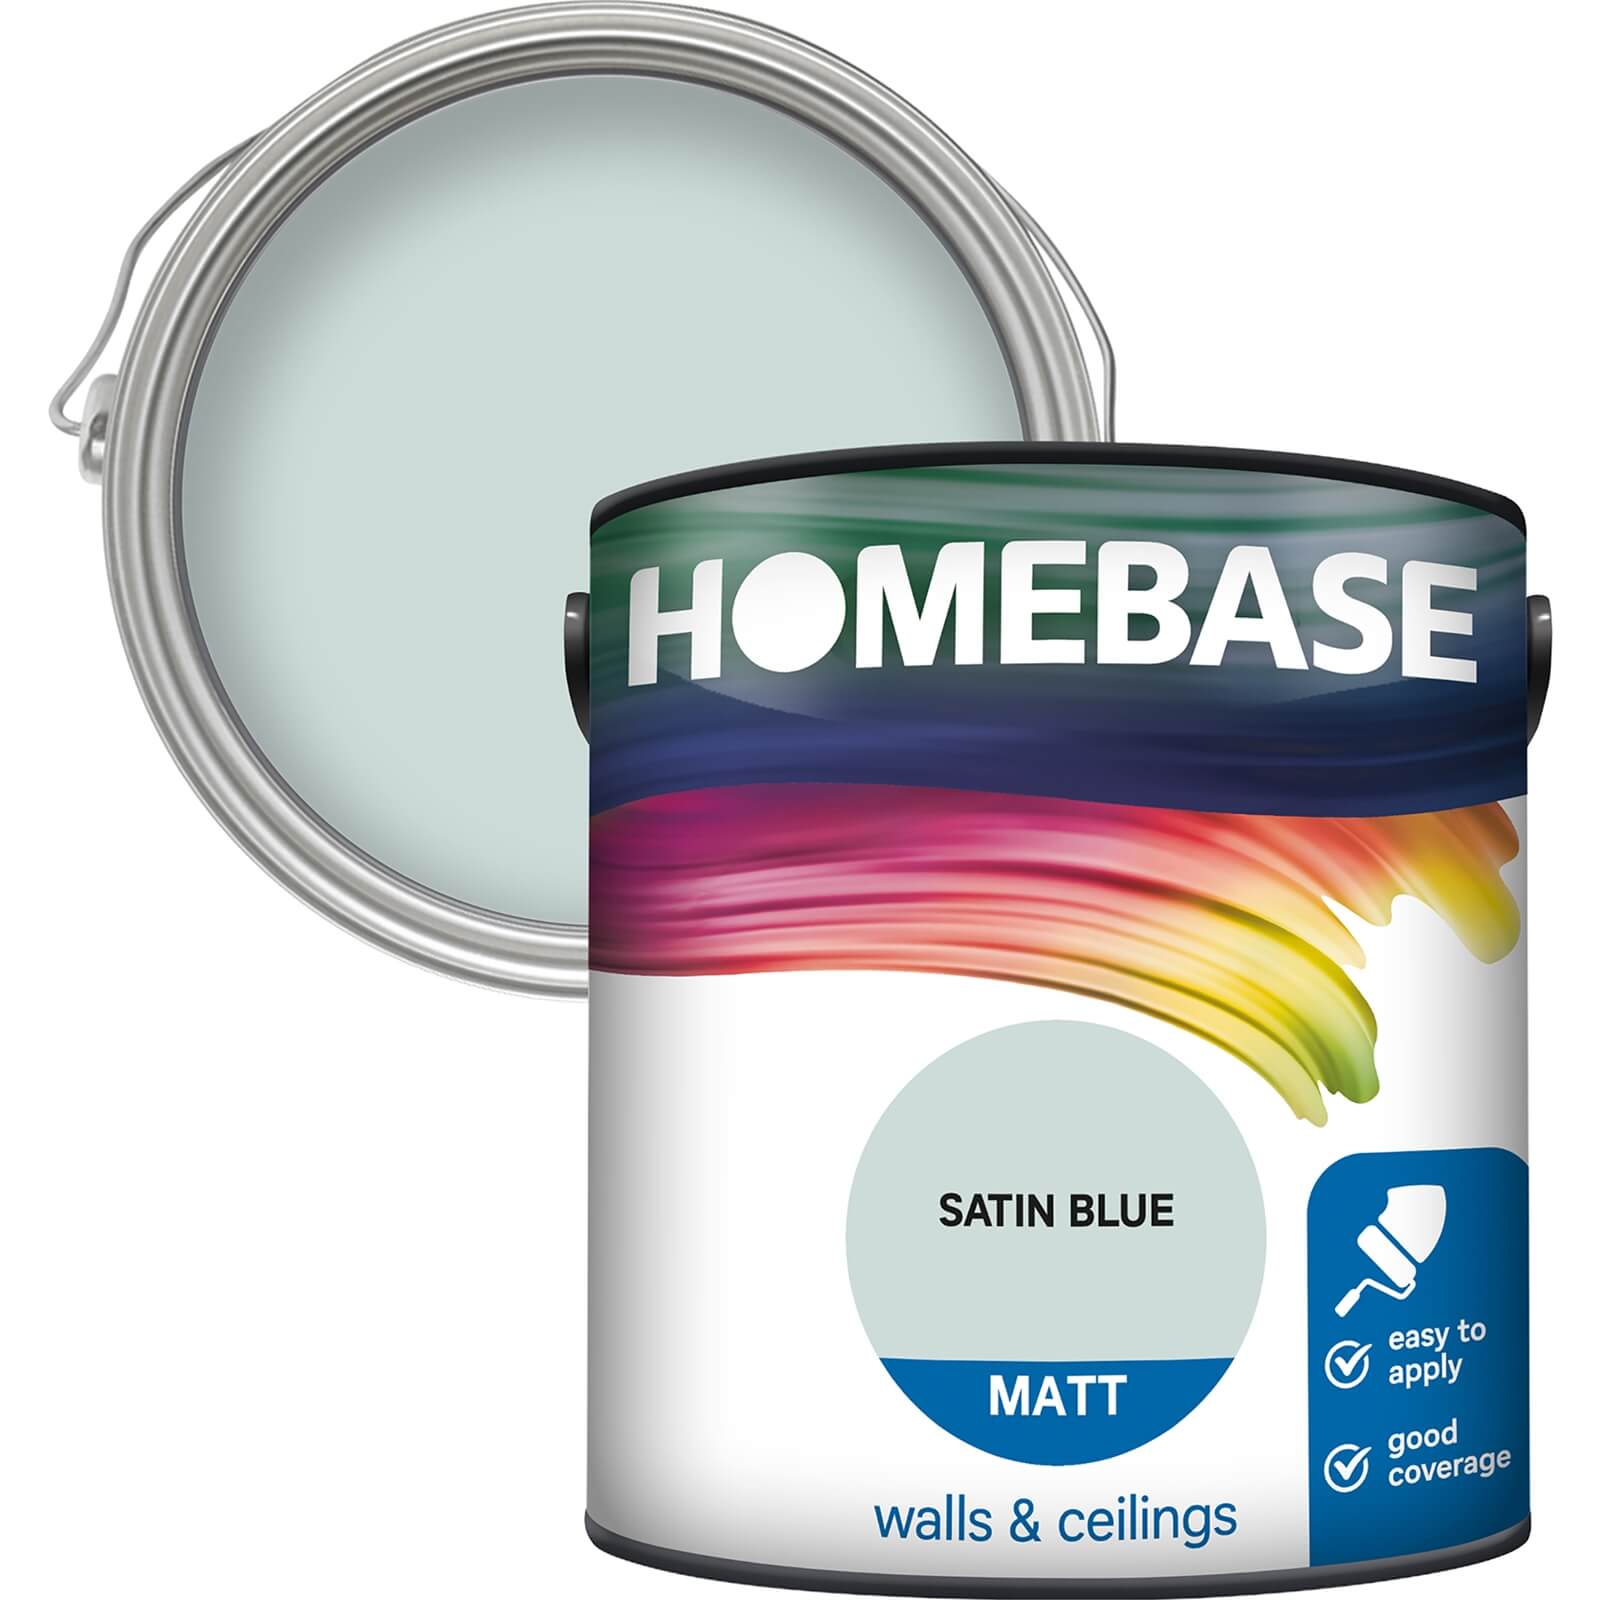 Homebase Matt Emulsion Paint Satin Blue - 2.5L